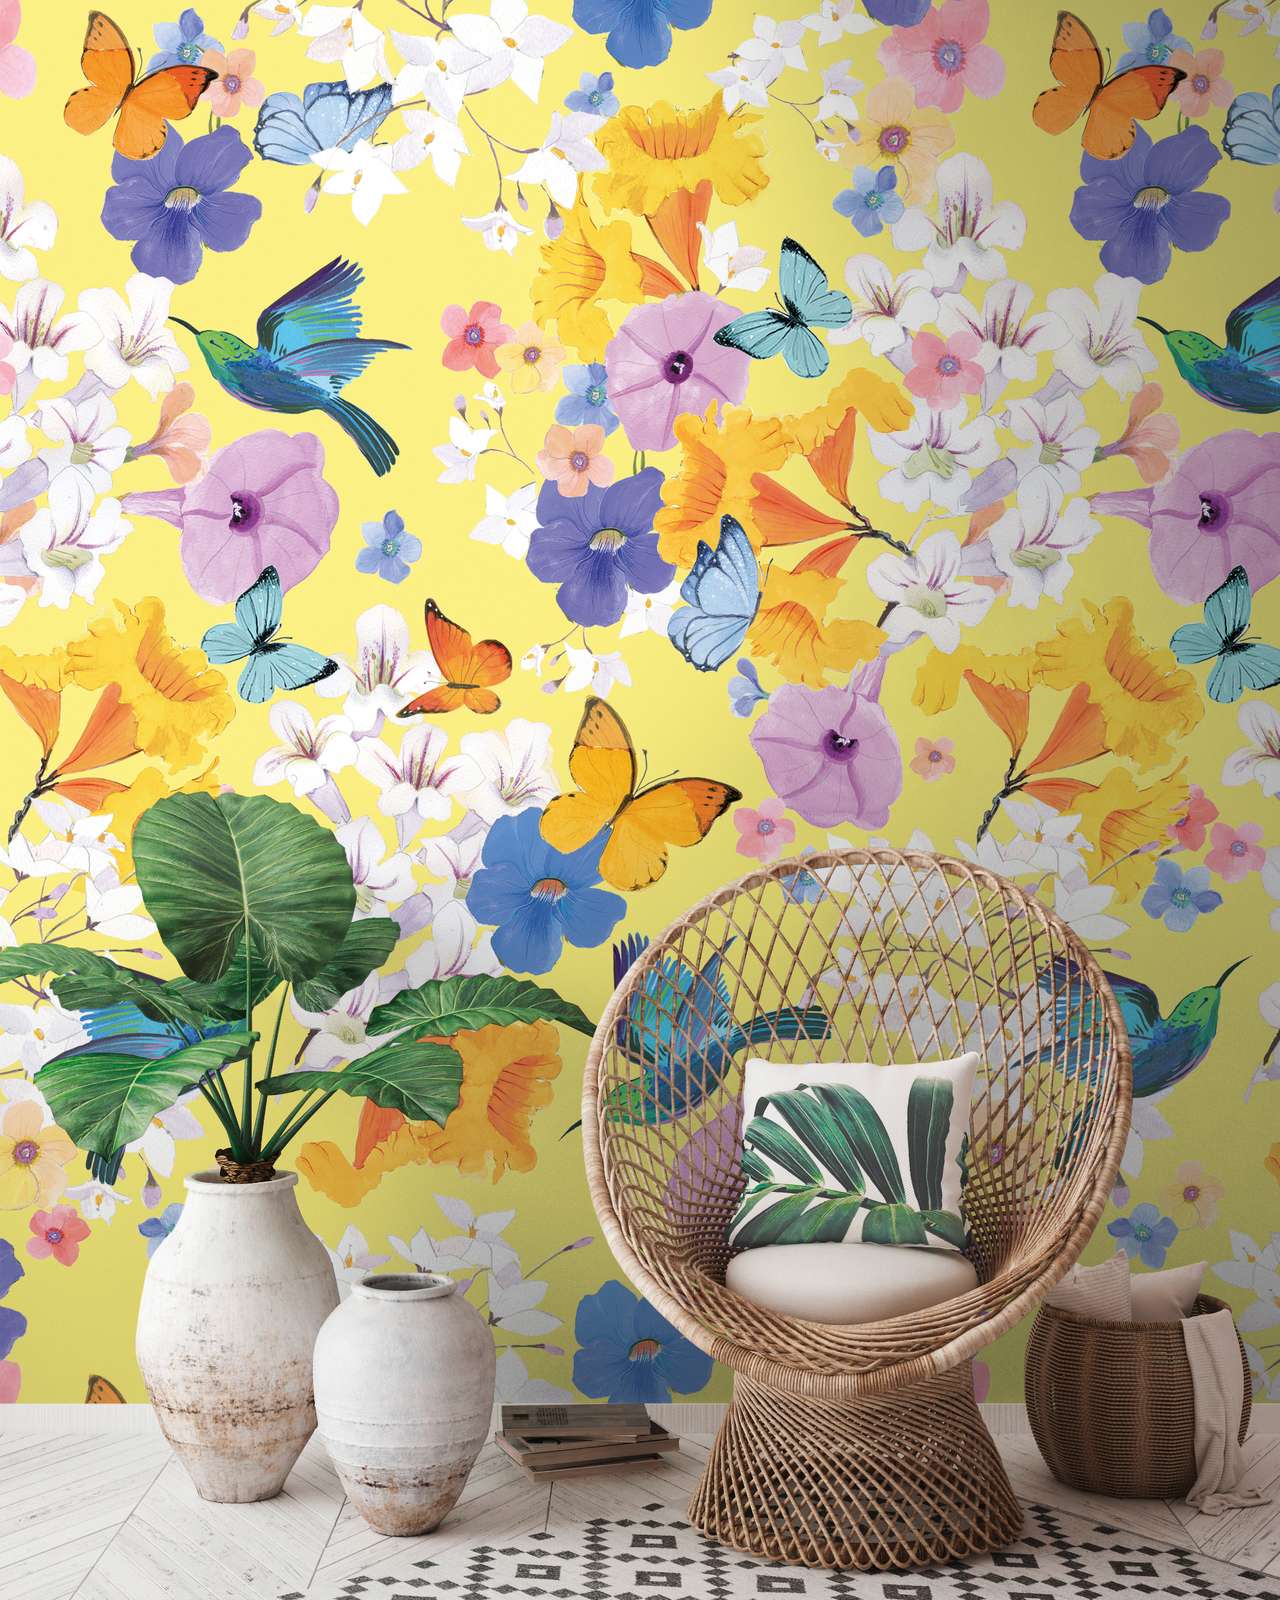             Bloemrijkbehang met vlinders en vogels - kleurrijk, geel, blauw
        